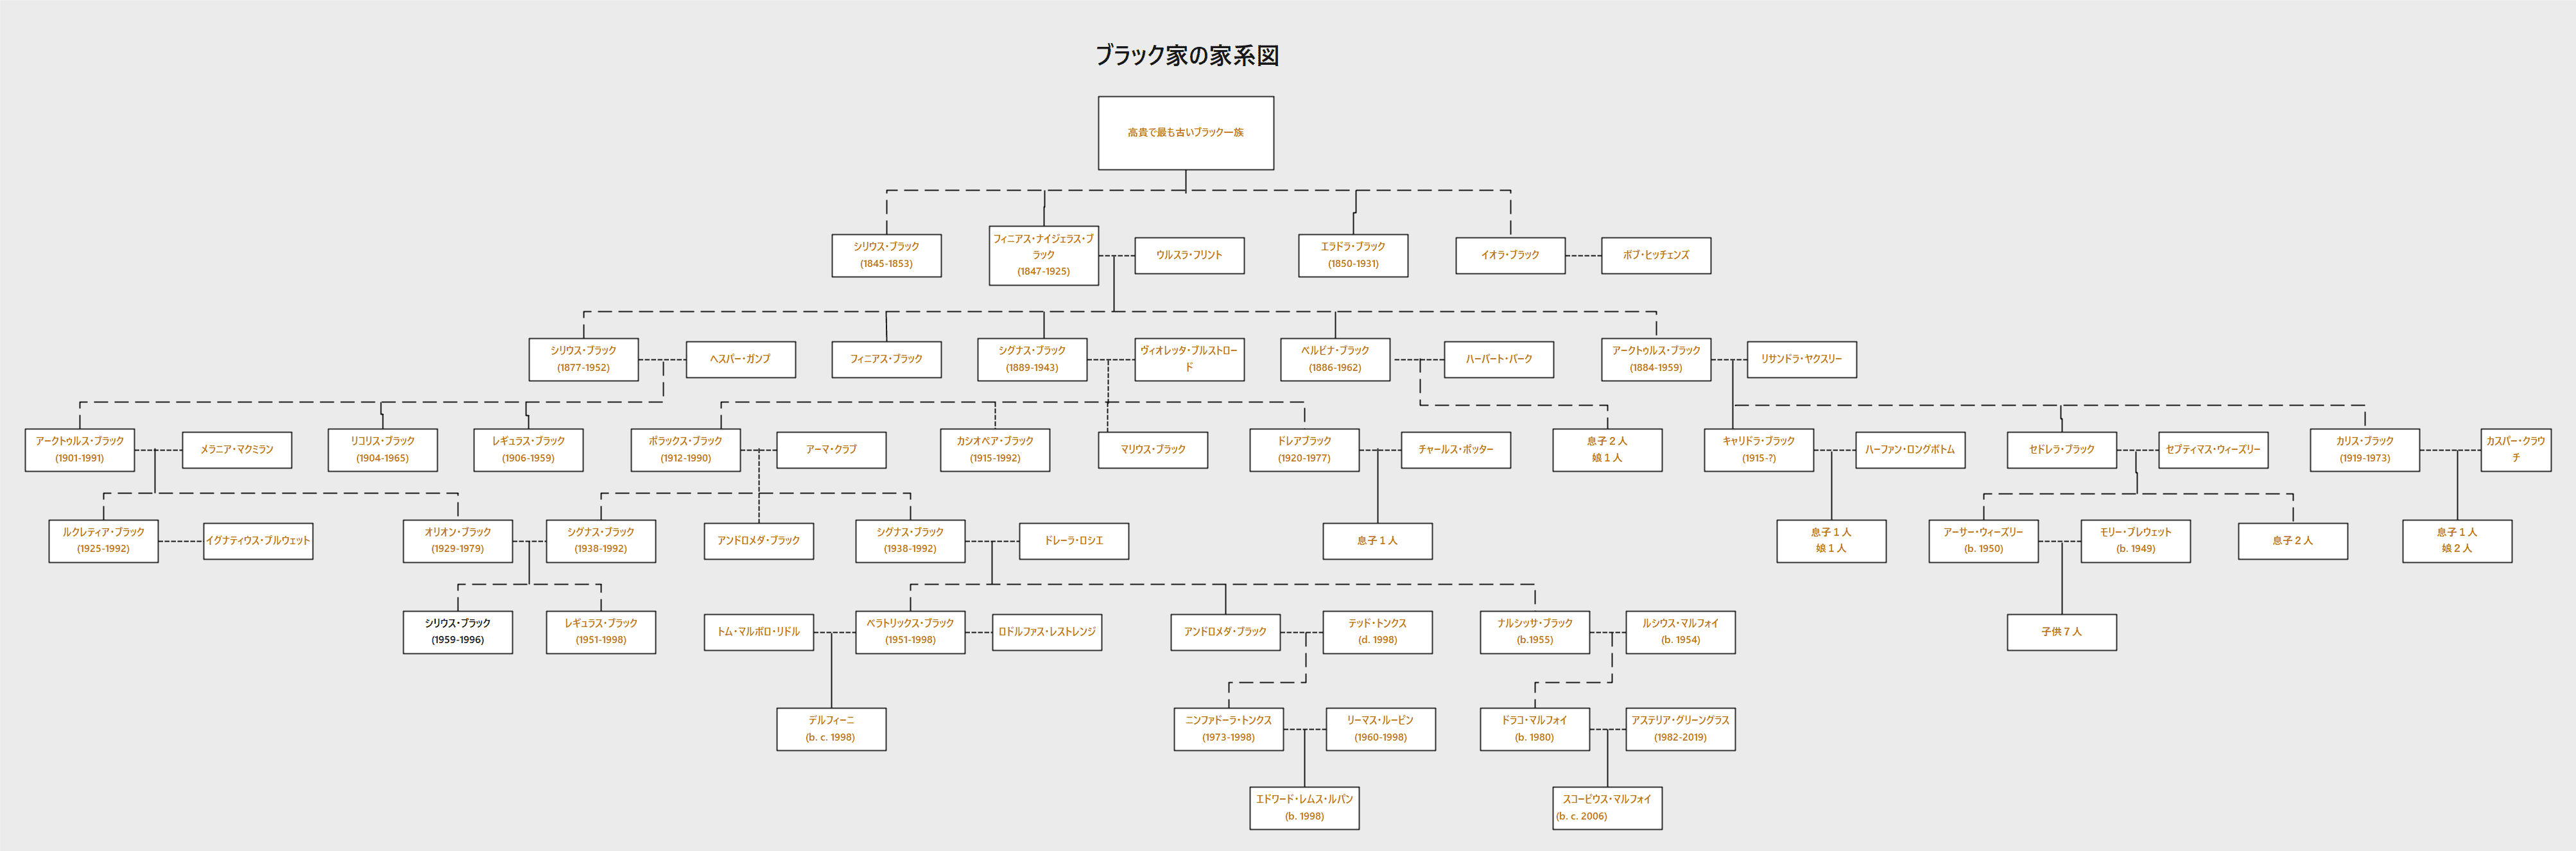 ブラック家の家系図